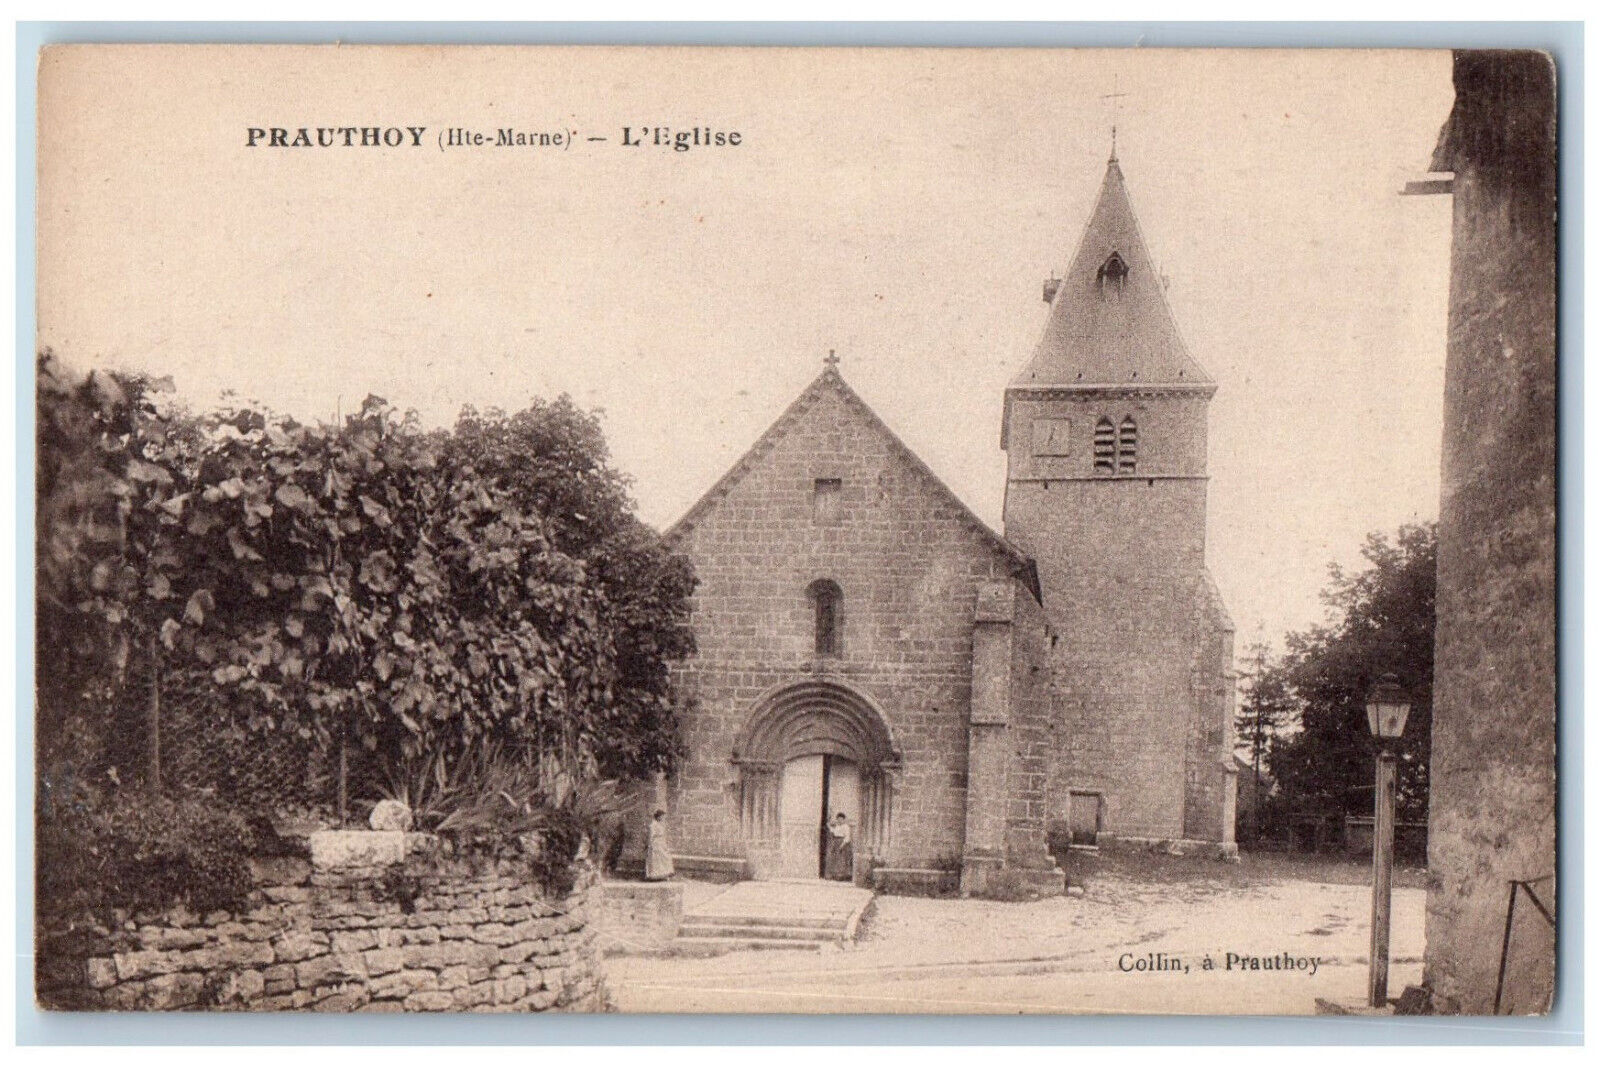 Prauthoy (Hte-Marne) France Postcard L'Eglise Building c1910 Unposted Antique